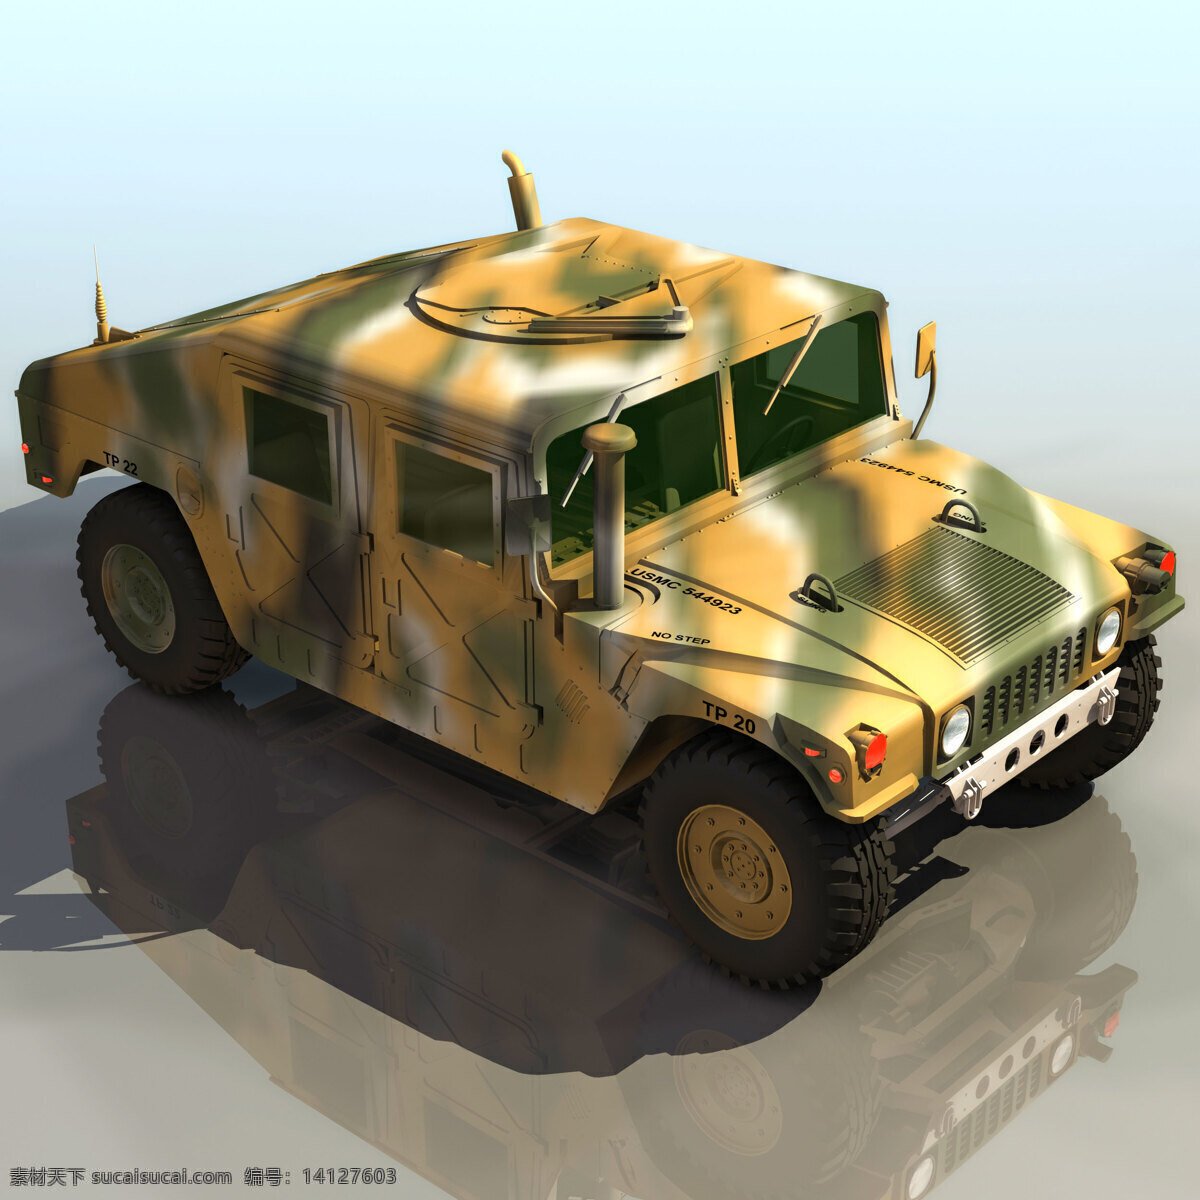 迷彩 装甲车 模型 max 悍马 汽车 3d模型素材 其他3d模型